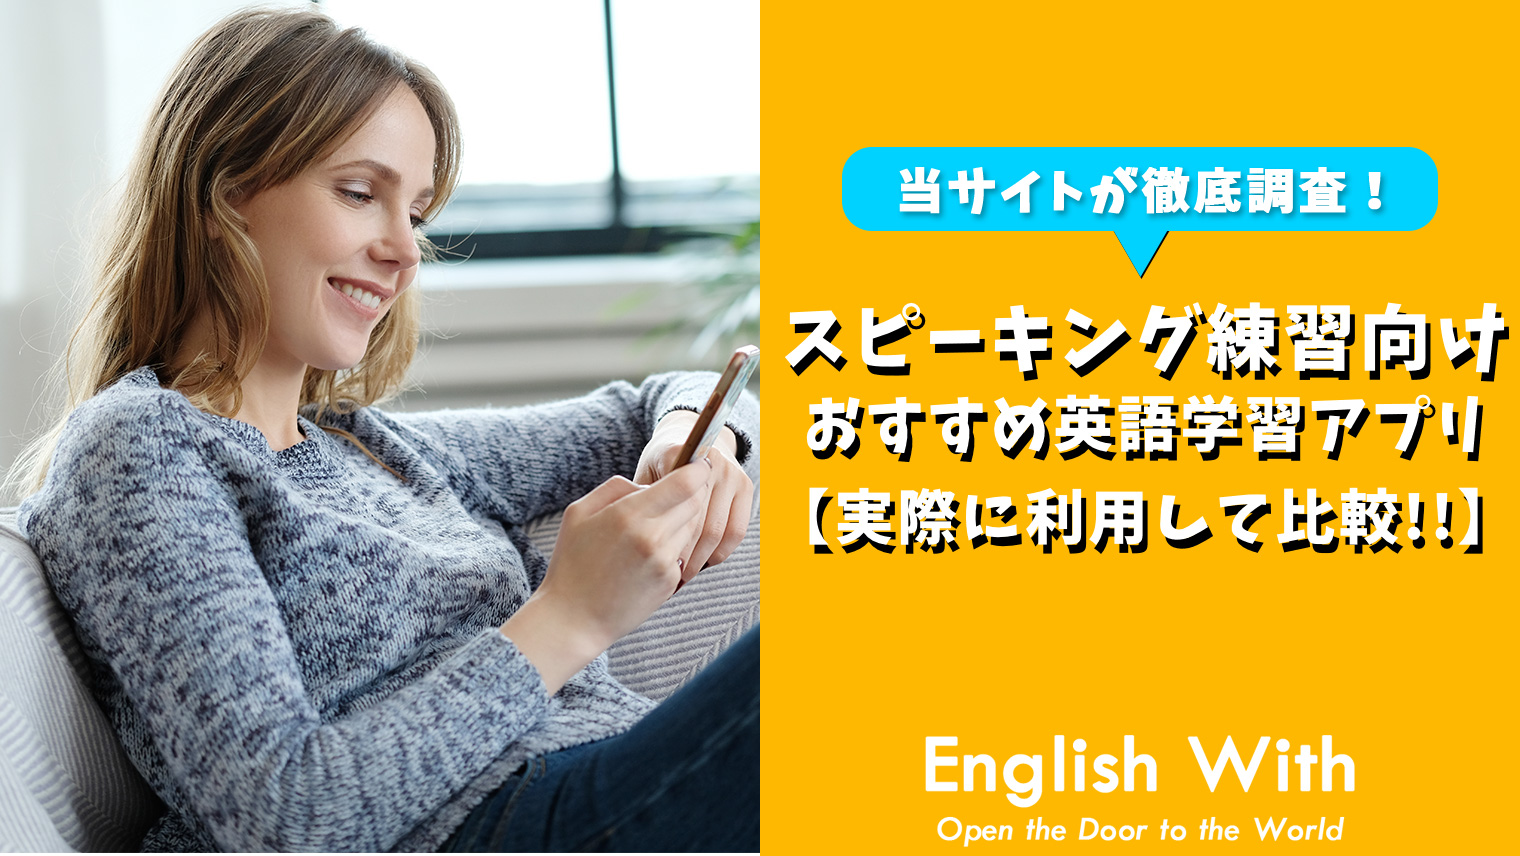 スピーキングの練習ができる おすすめ英語学習アプリ 8選 おすすめ英会話 英語学習の比較 ランキング English With